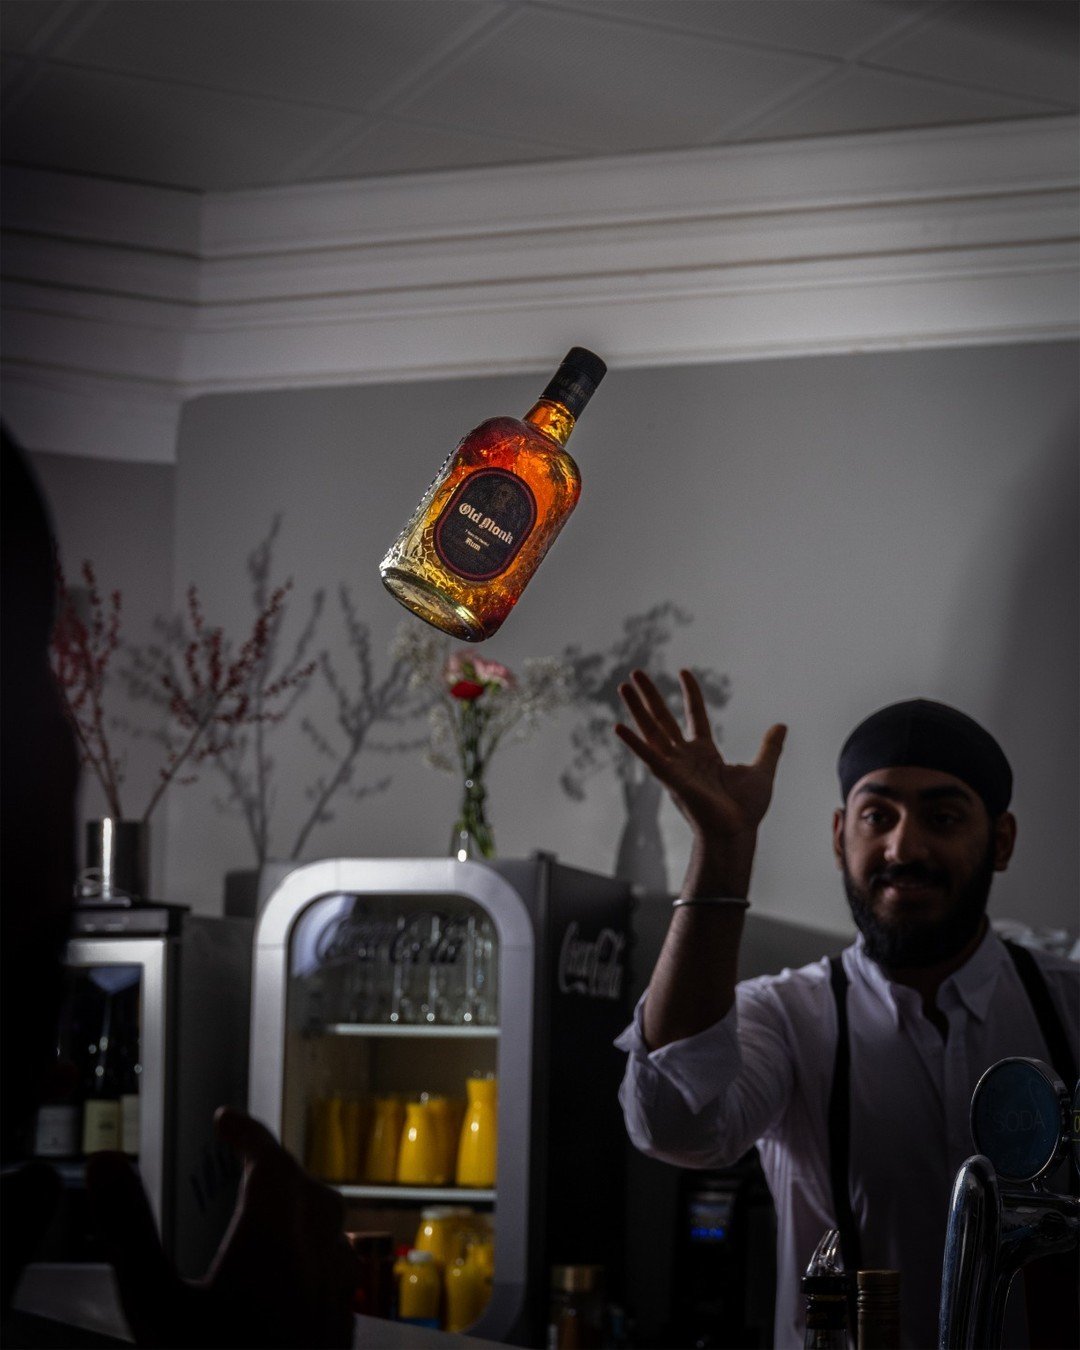 Auch wenig Spa&szlig; bei der Arbeit muss sein! 🫢 - Zum Gl&uuml;ck hat unser Barkeeper die Flasche auch gefangen 🍾

#rum#fun#barkeeper#bar#drinks#restaurant#indianfood#indiandrinks#india